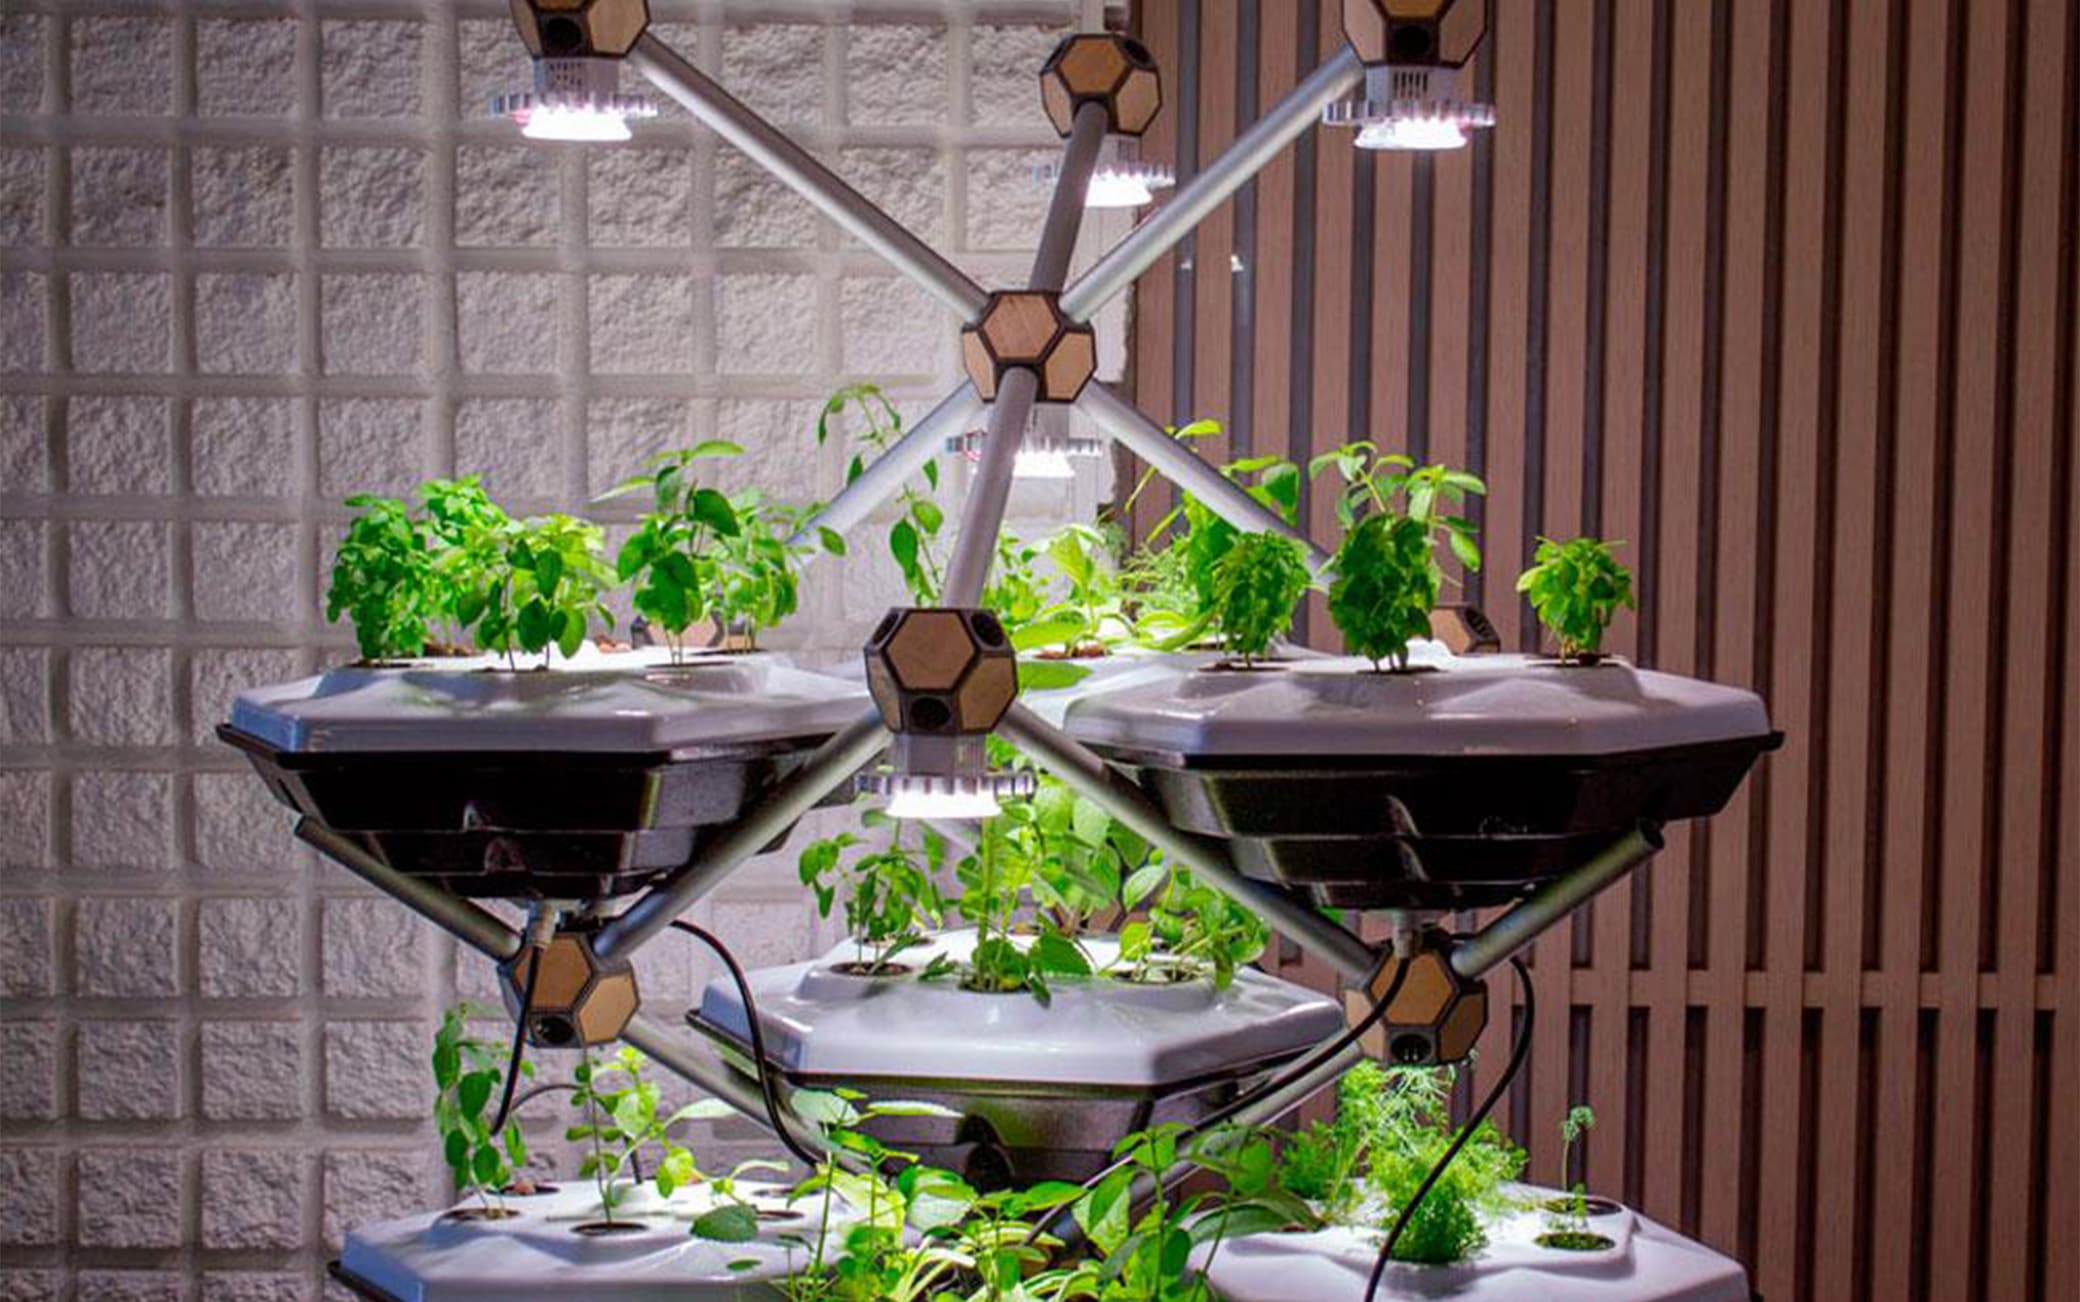 Living Farming Tree, the fully digitized IoT vertical vegetable garden